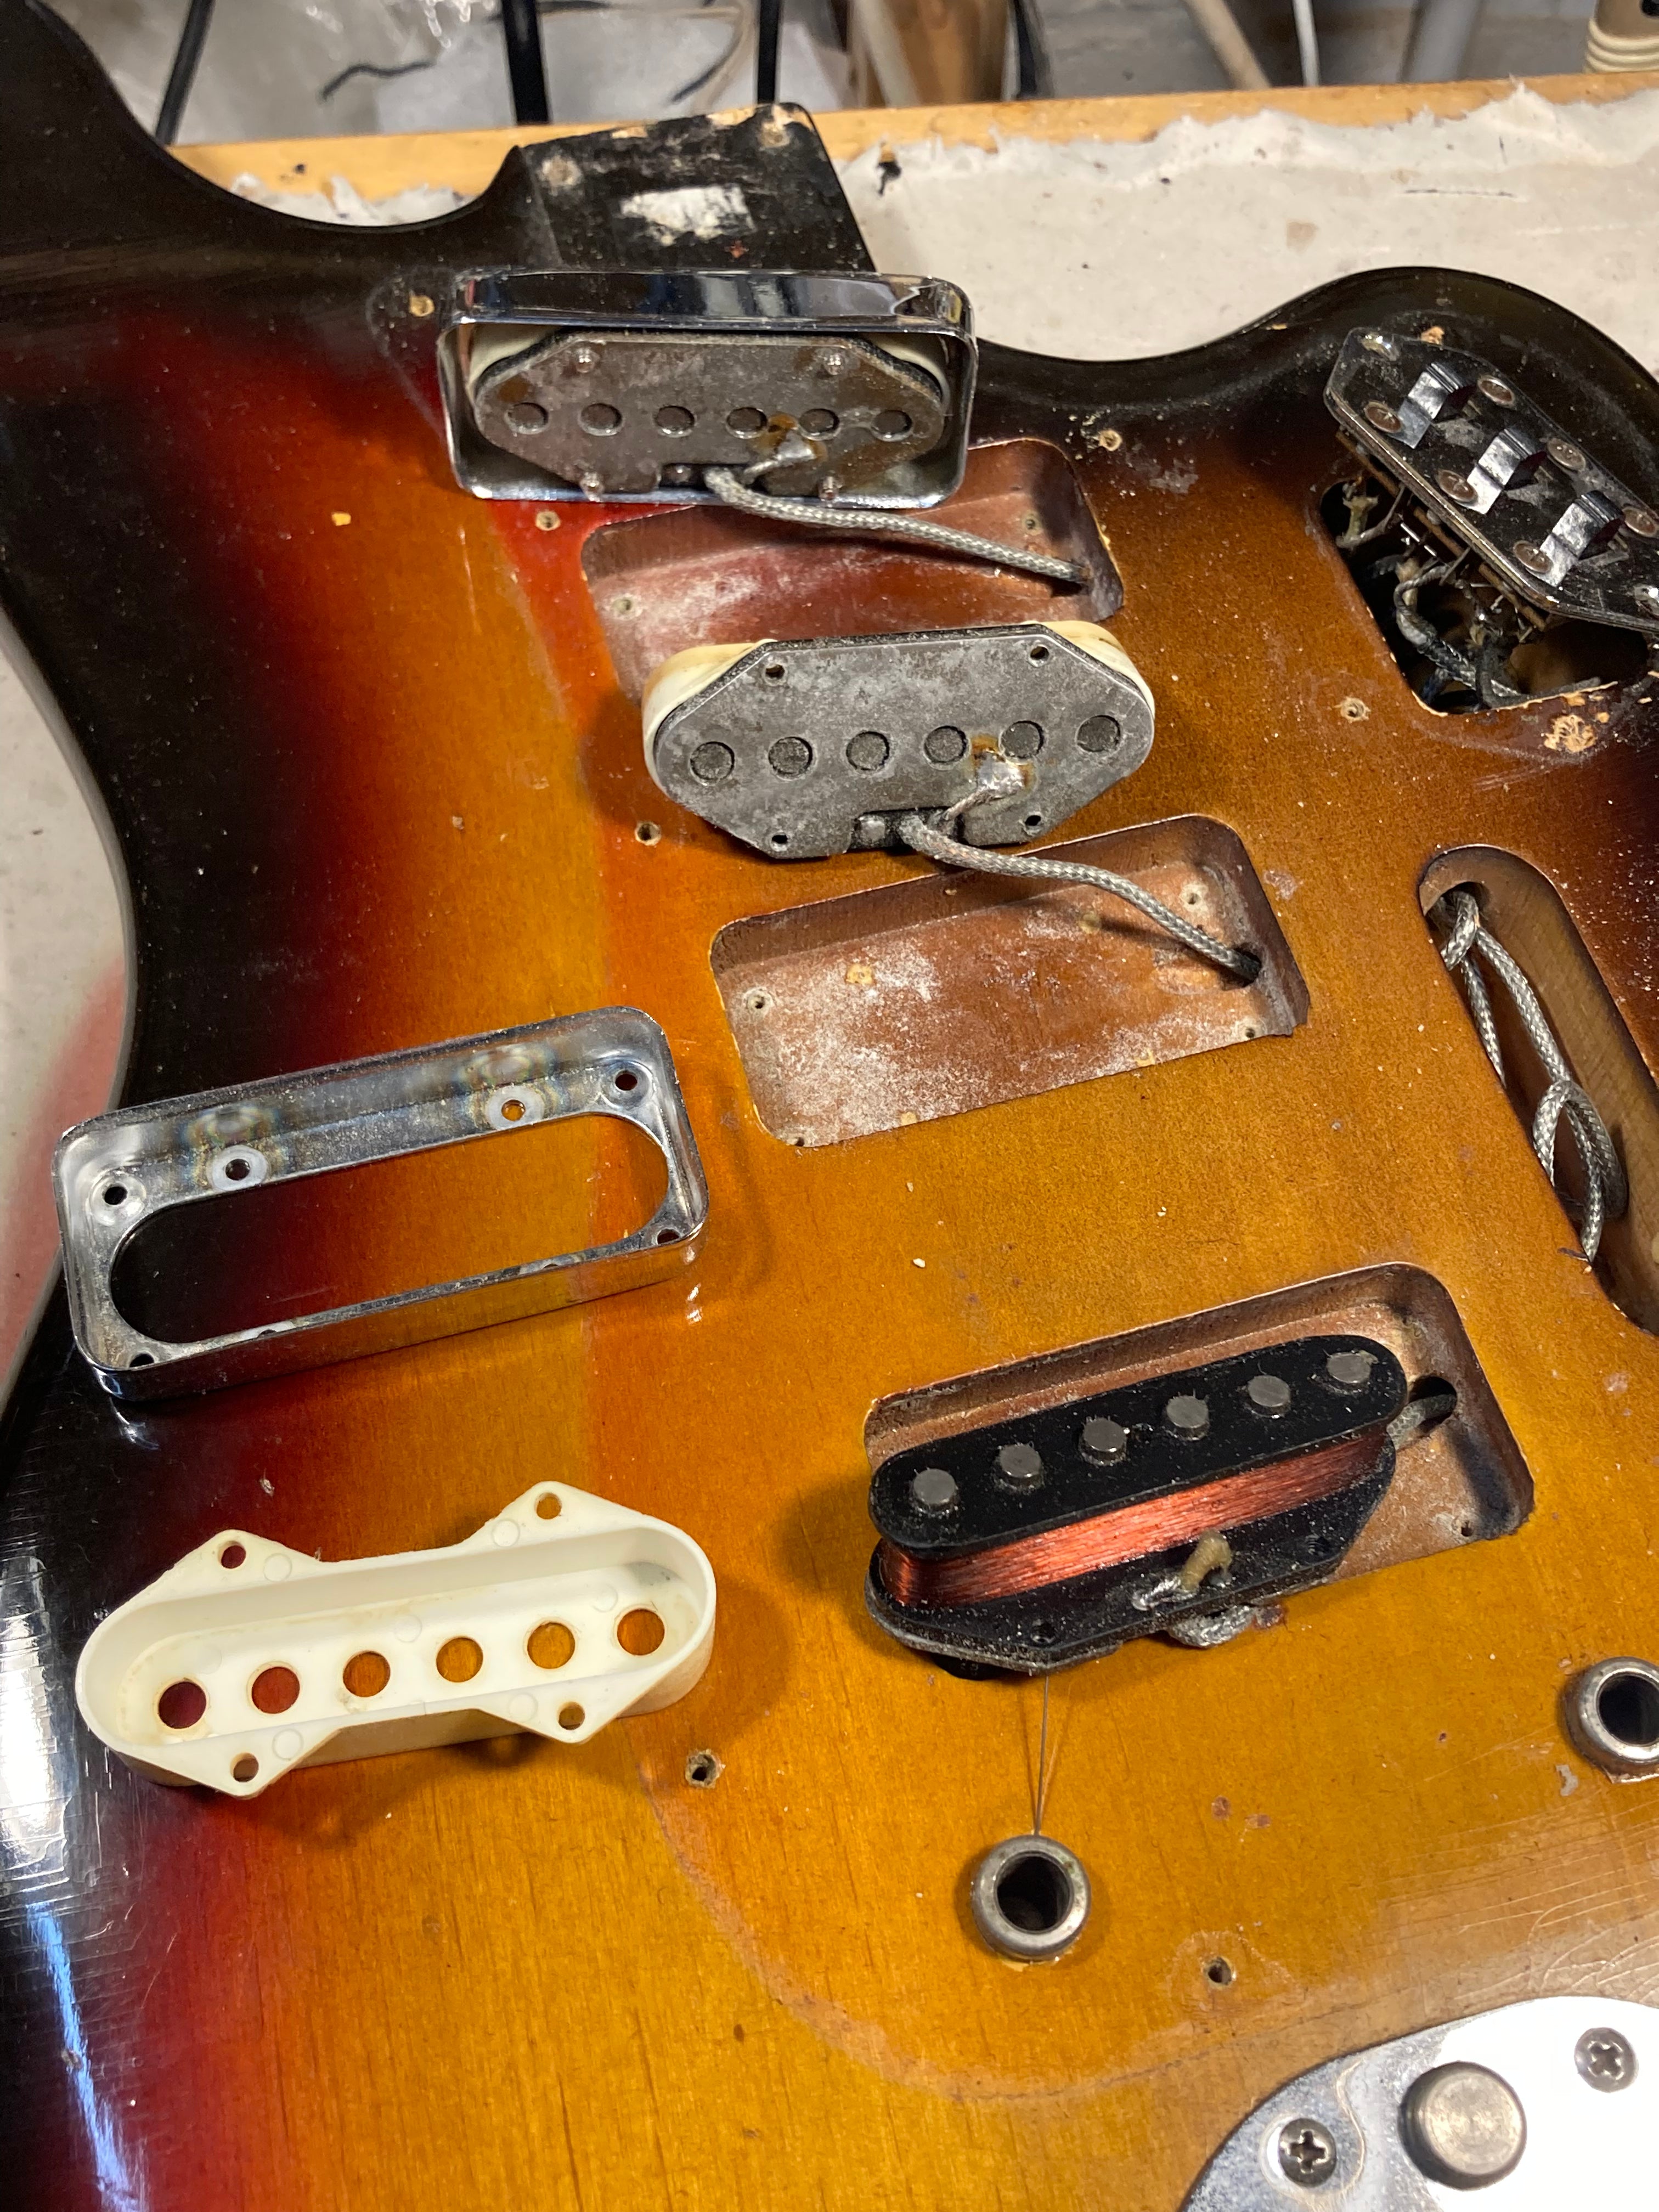 Fender 1962 Bass VI Sunburst